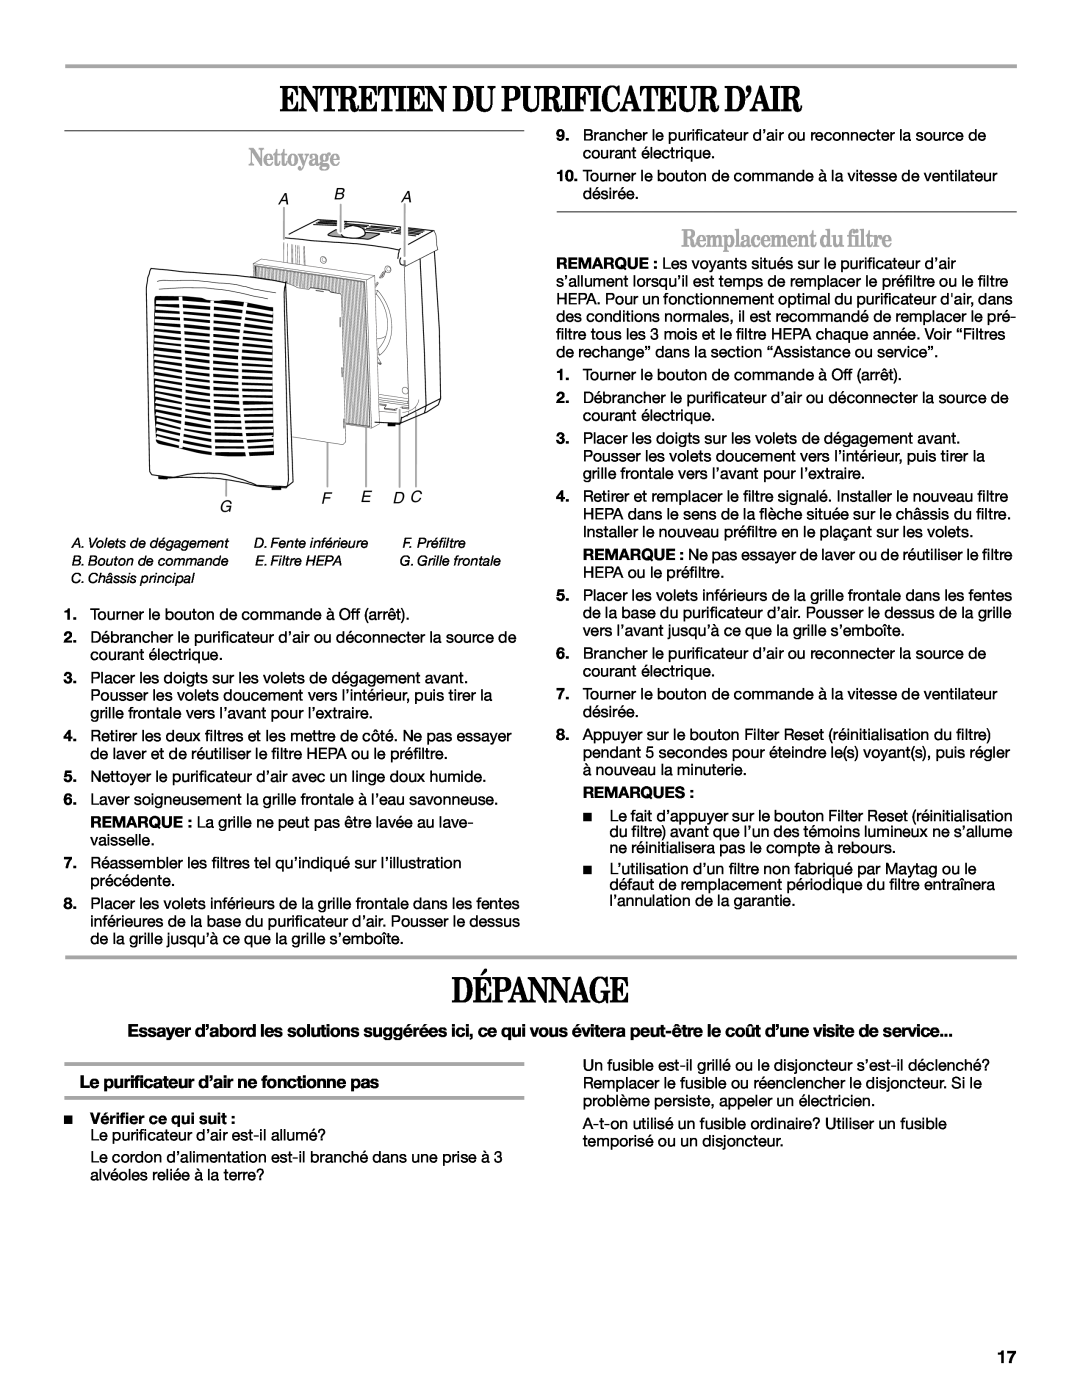 Maytag MT-AP250450 manual Entretien Du Purificateur D’Air, Dépannage, Nettoyage, Remplacement du filtre, A B A 